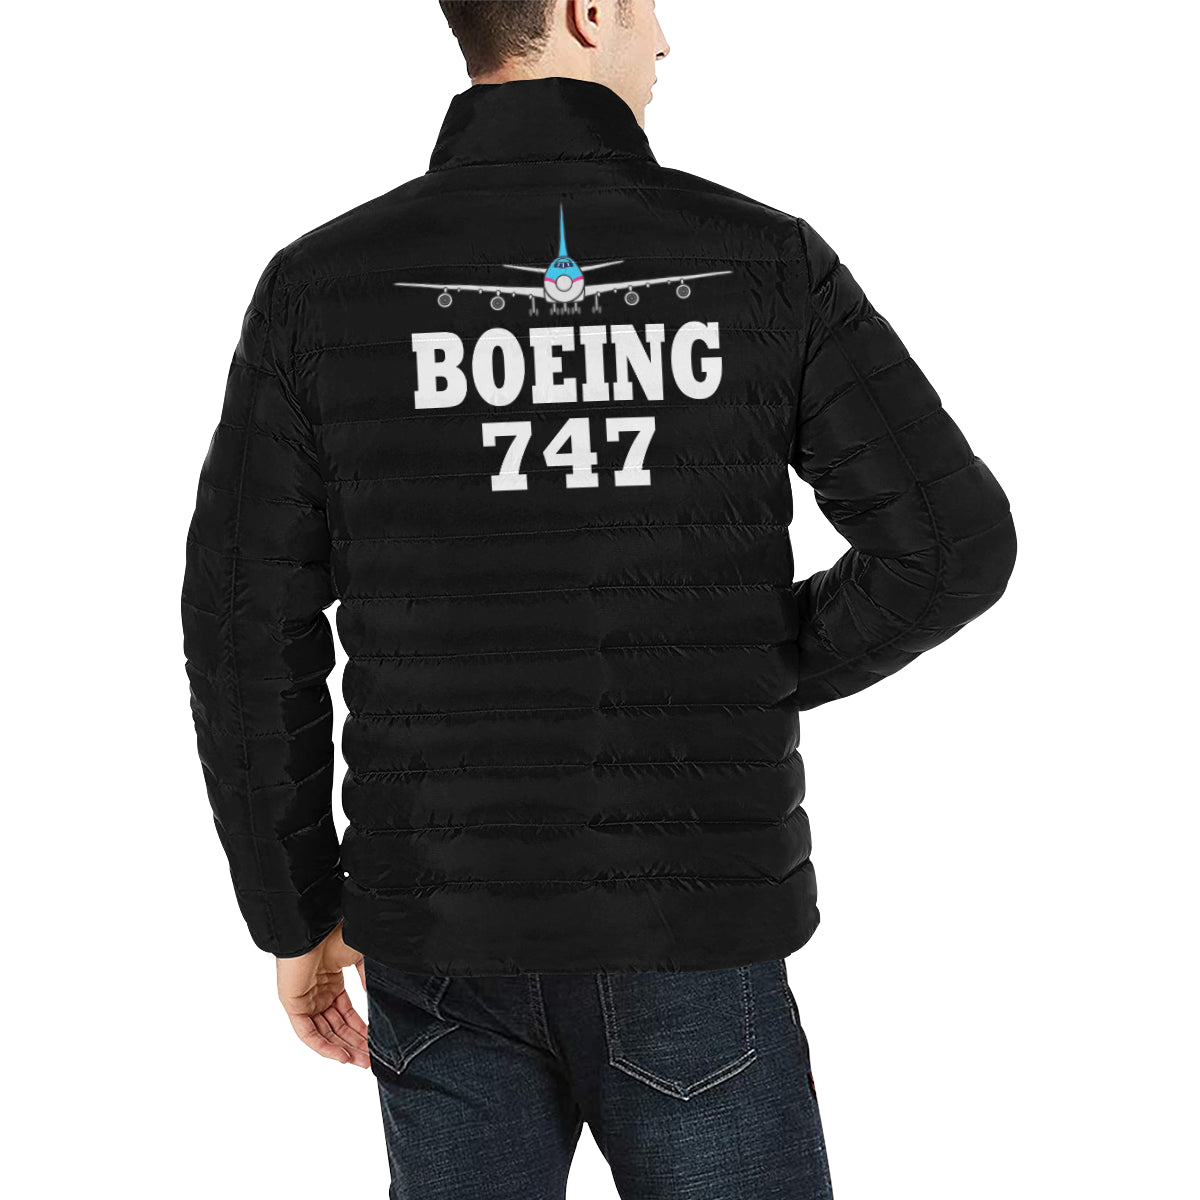 BOEING 747 Men's Stand Collar Padded Jacket e-joyer